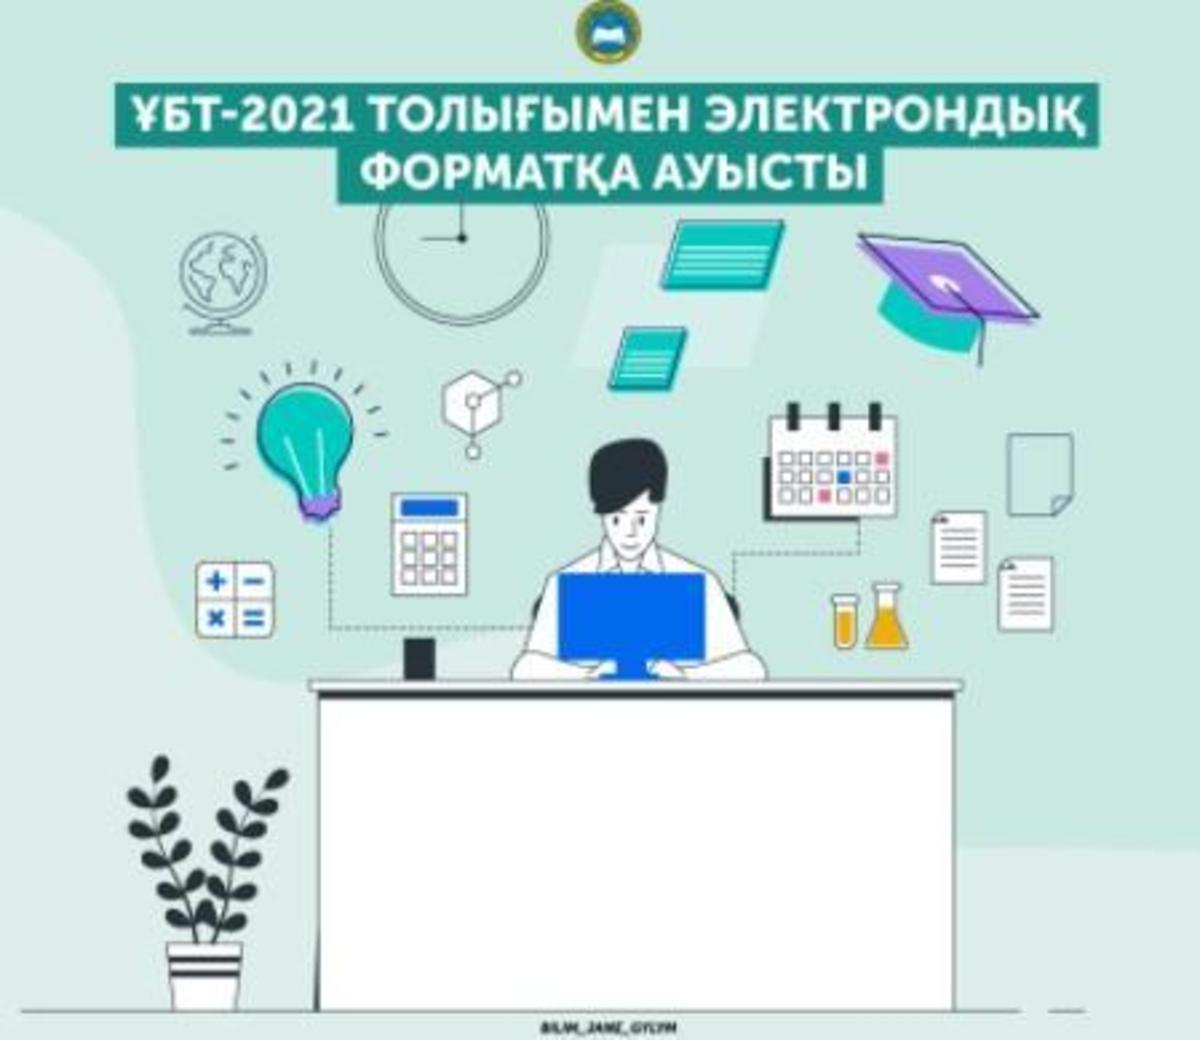 ҰБТ-2021 ТОЛЫҒЫМЕН ЭЛЕКТРОНДЫҚ ФОРМАТҚА АУЫСТЫ